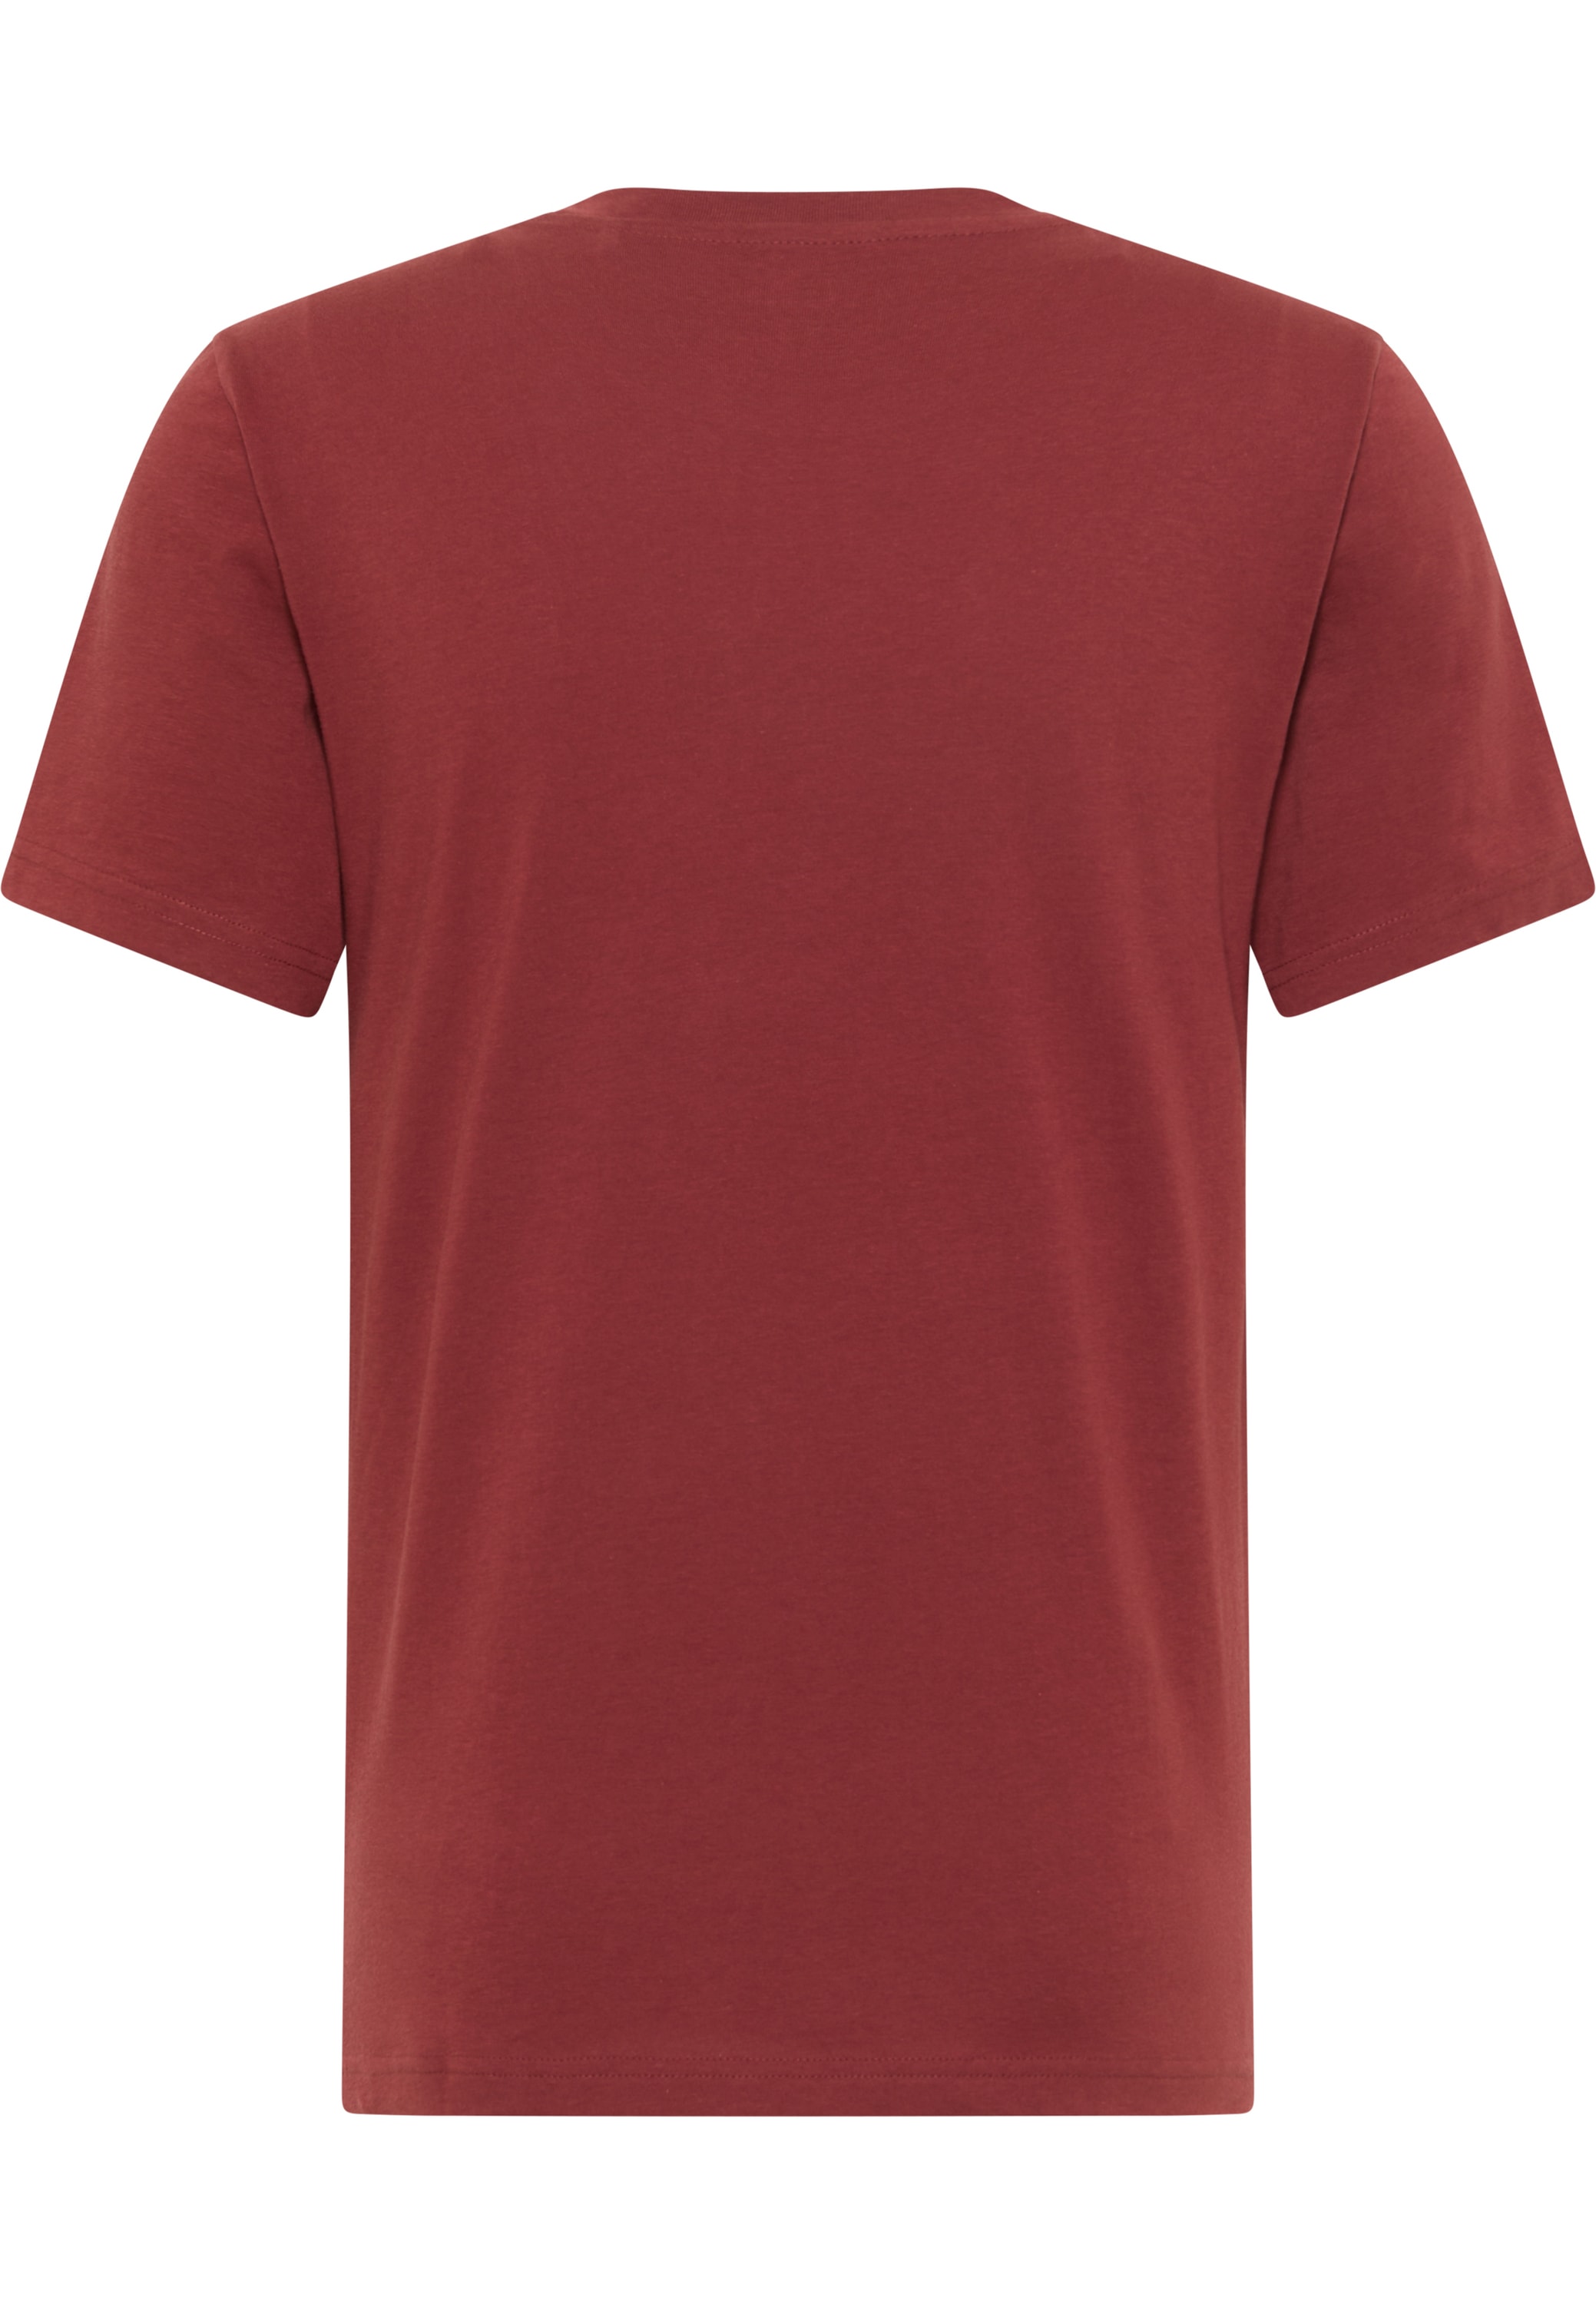 MUSTANG Kurzarmshirt »Mustang online T-Shirt Print-Shirt« bei